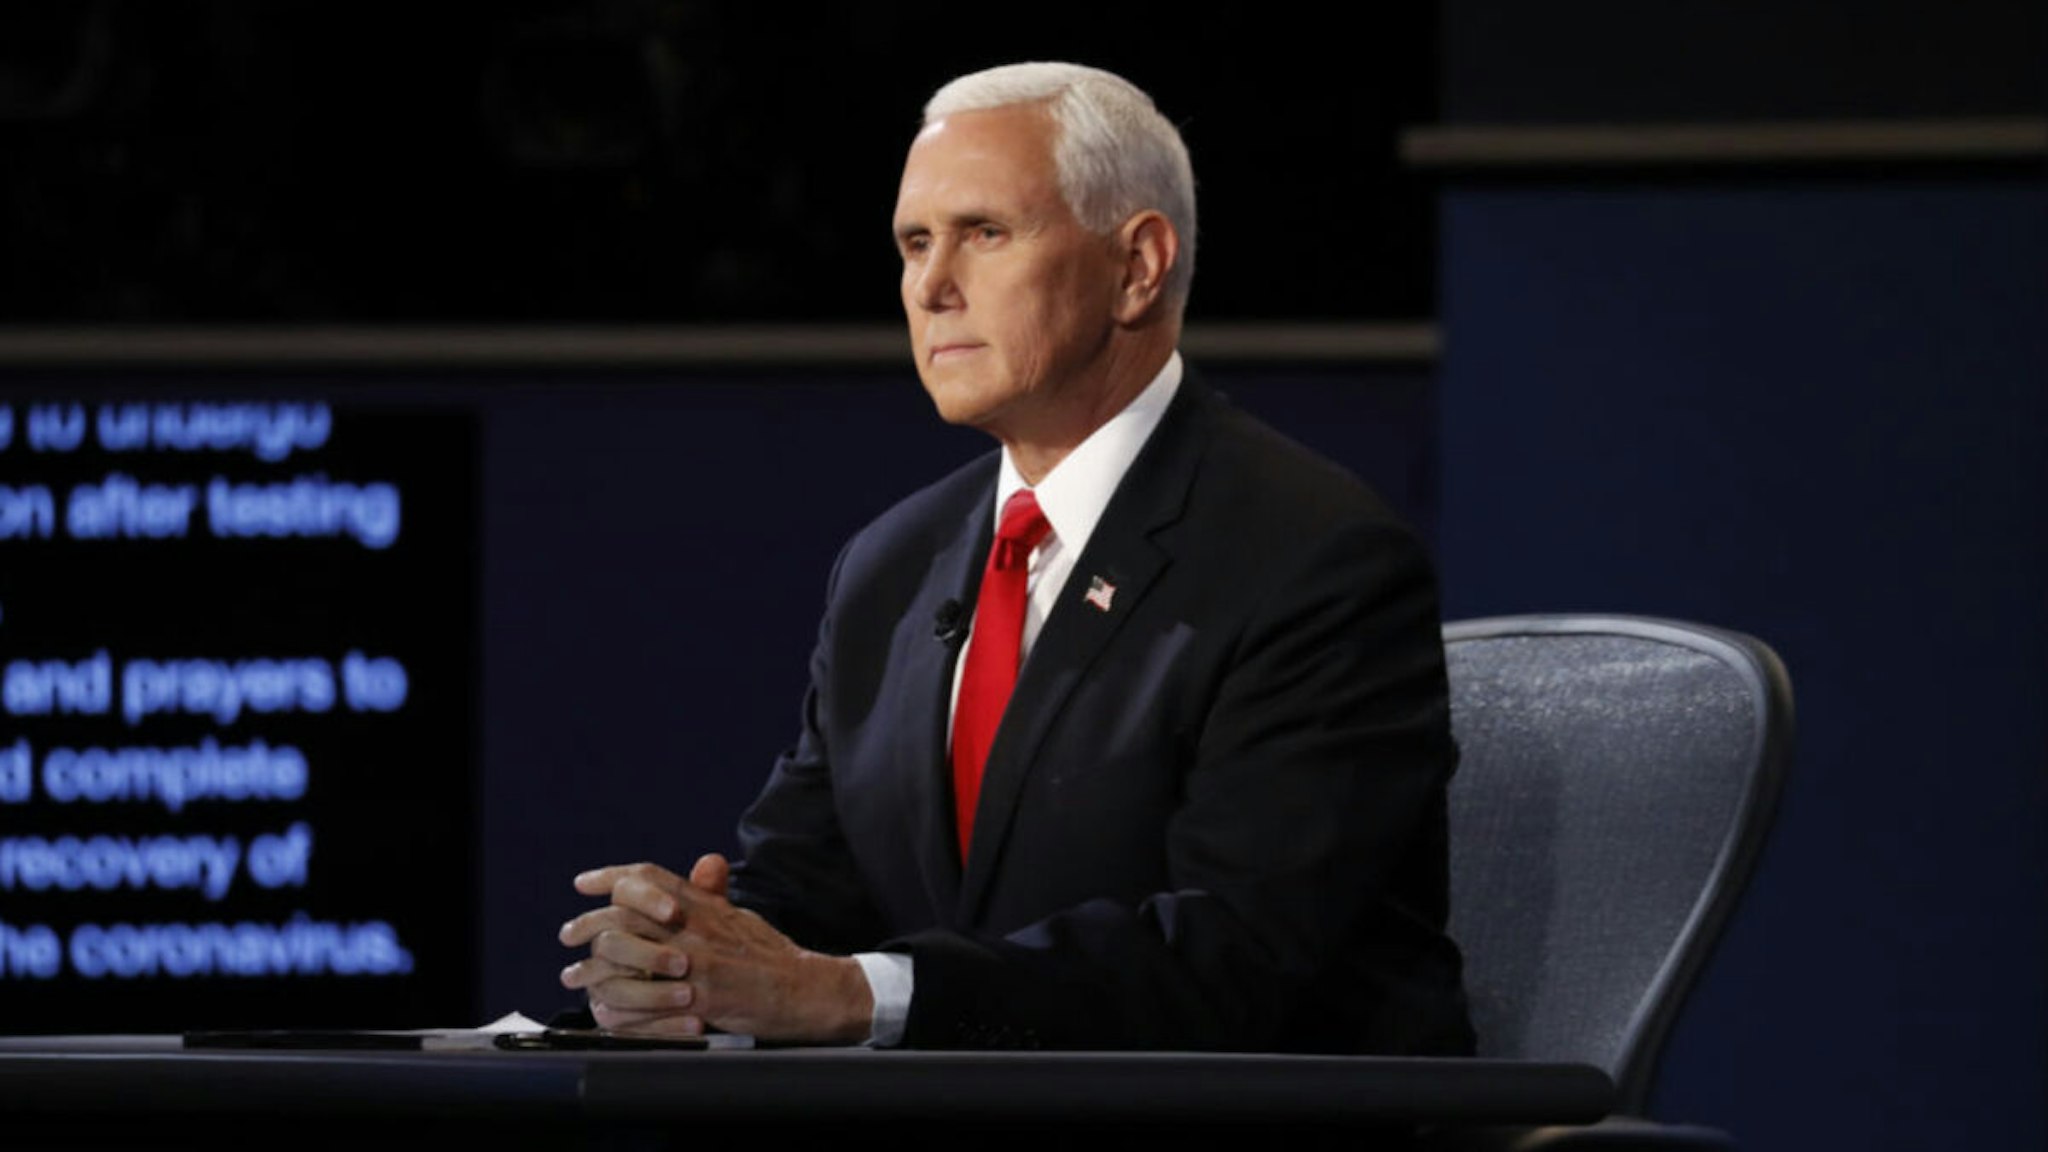 U.S. Vice President Mike Pence waits to begin the U.S. vice presidential debate at the University of Utah in Salt Lake City, Utah, U.S., on Wednesday, Oct. 7, 2020.